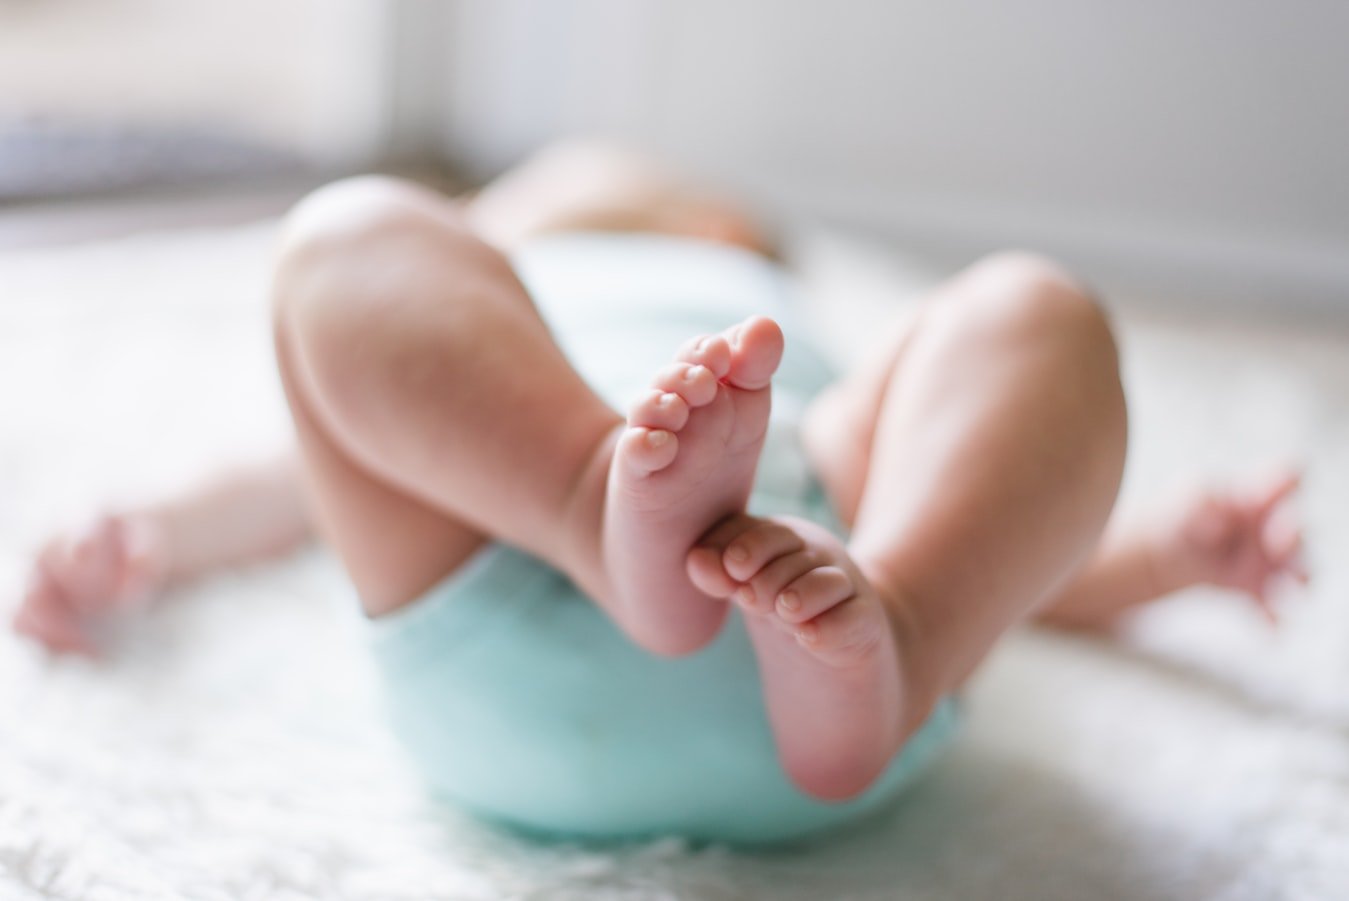 Les pieds d'un bébé. l Source : Unsplash